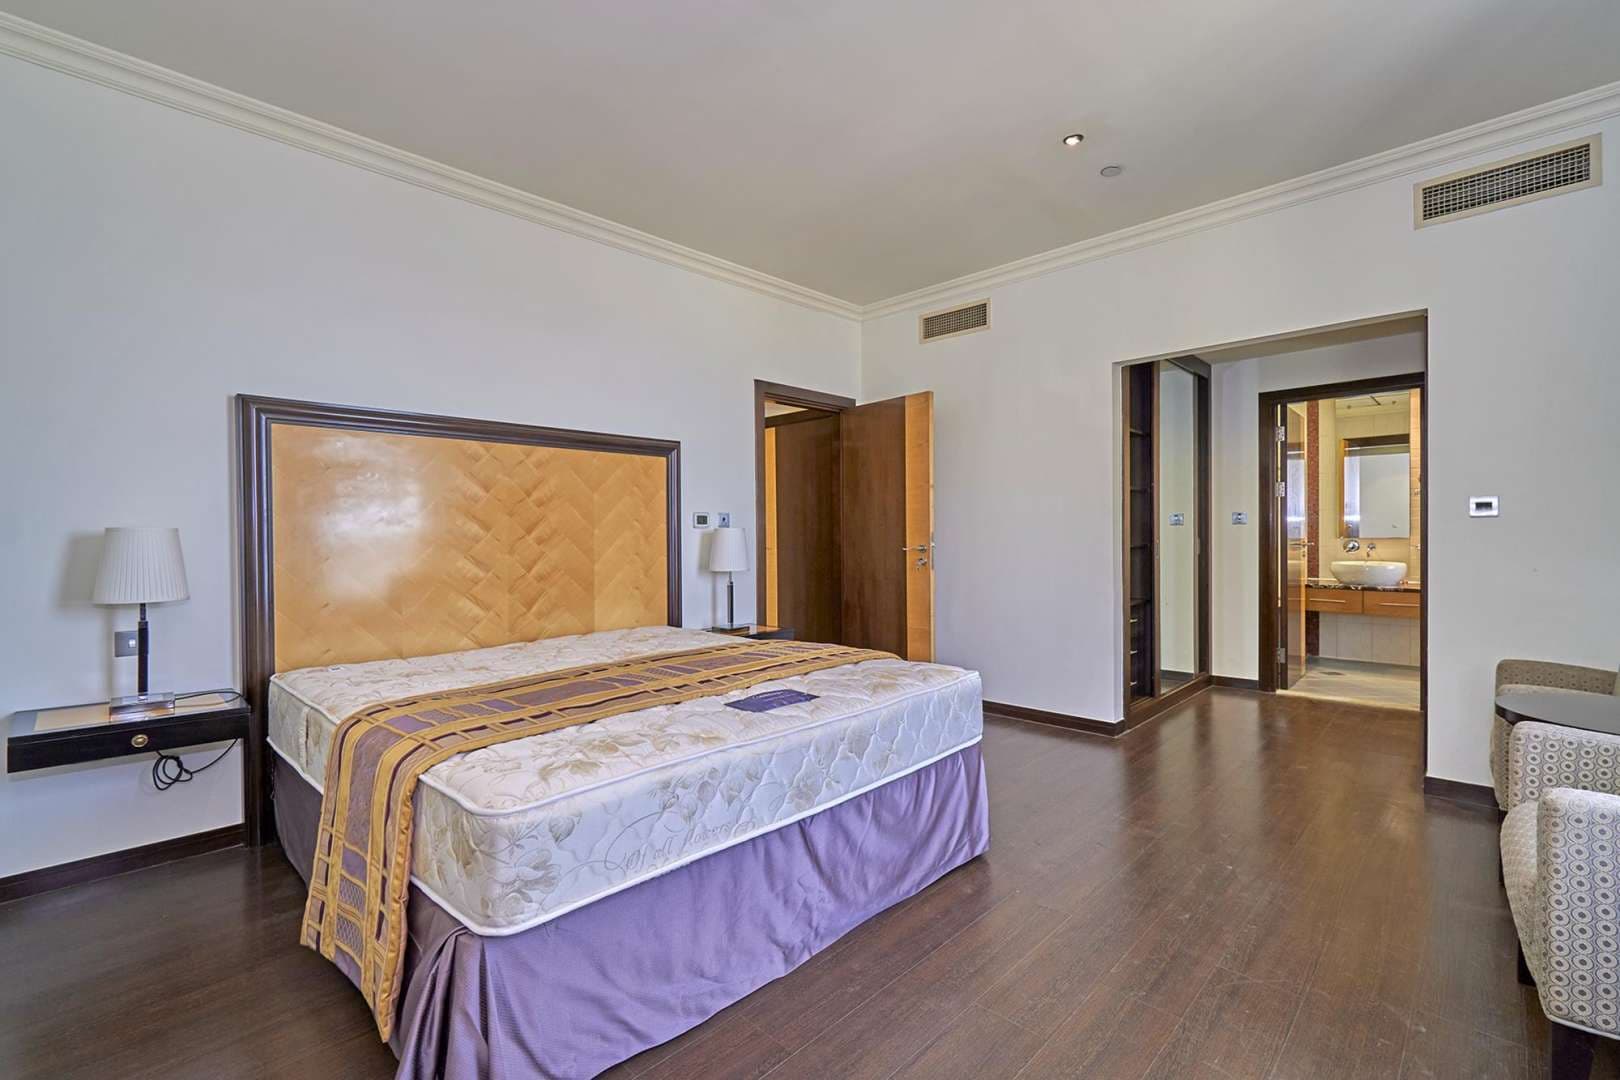 2 Bedroom Apartment For Rent Murjan Lp04925 B84919011b5ec00.jpg